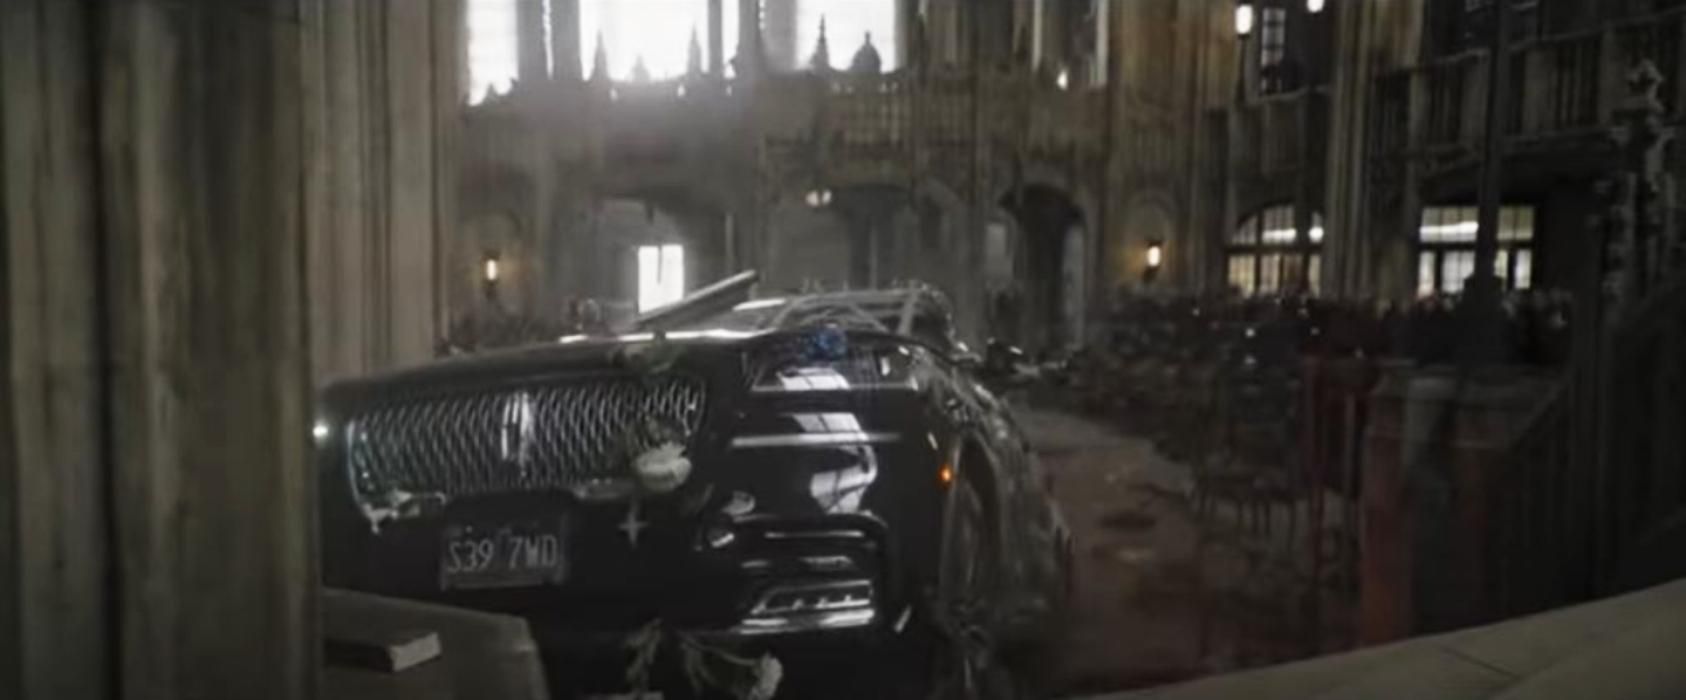 Warner Bros. опубликовала сцену с похоронами из "Бэтмена": напряженные видеокадры